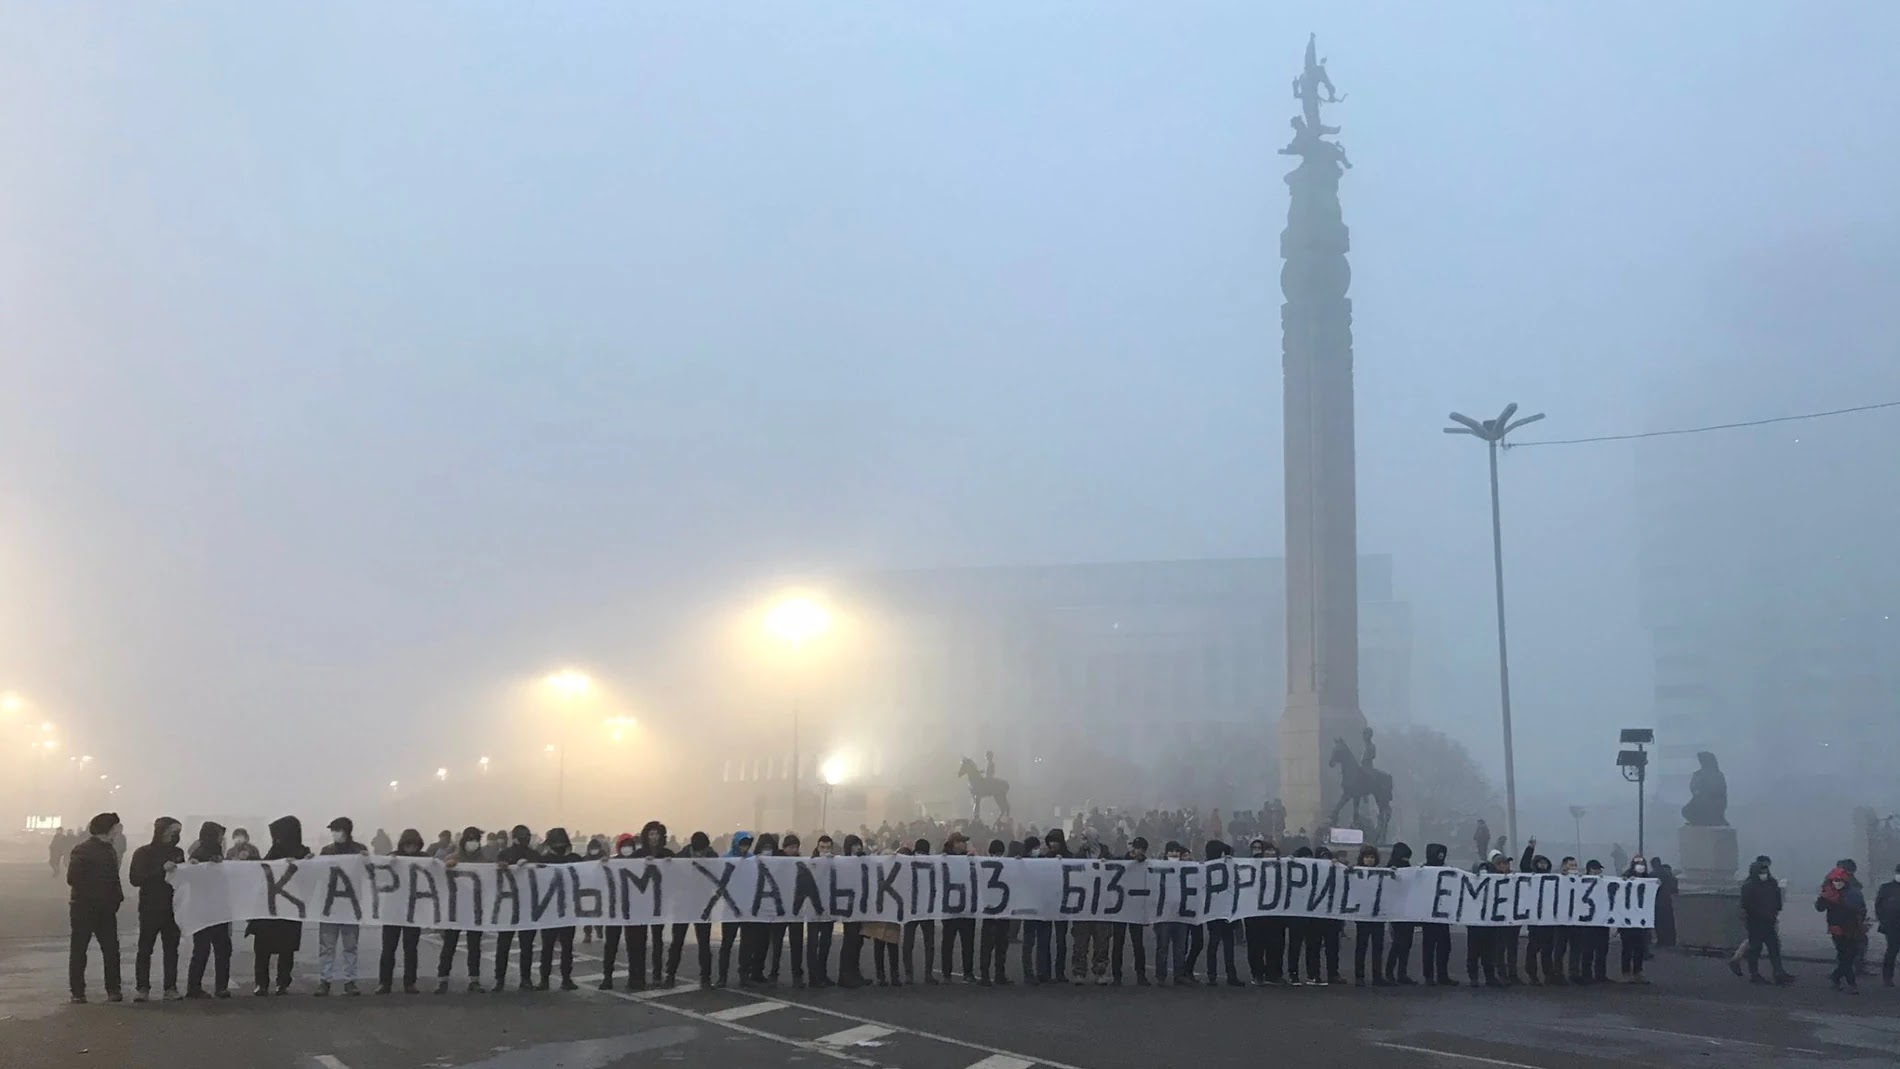 Протестующие в Алматы с транспарантом «Мы - простые люди, мы - не террористы». 6 января 2022 года